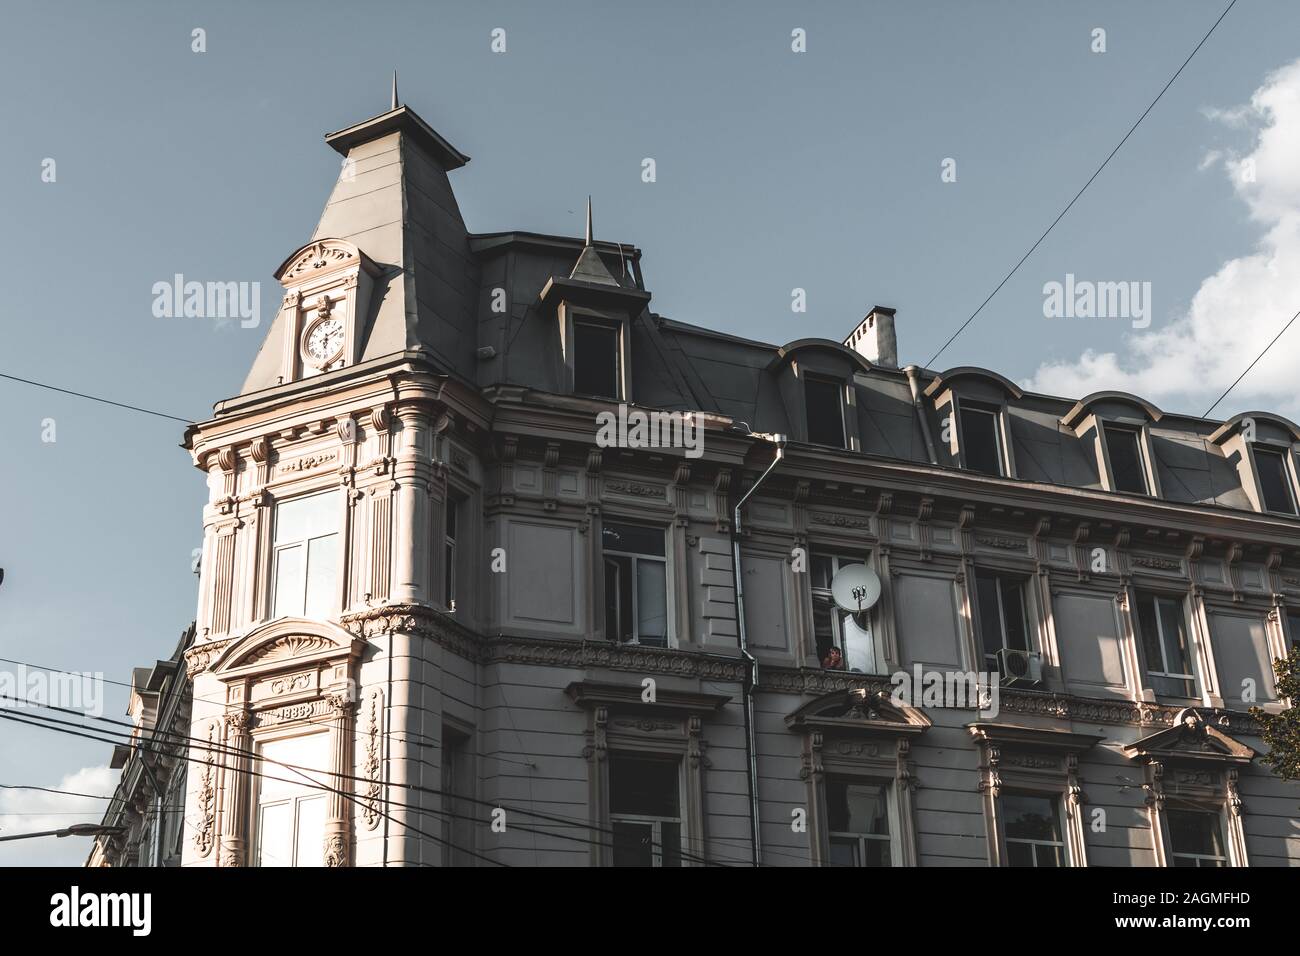 Odessa, Ucraina - Agosto 23, 2019: Architettura Odessa del XIX secolo. Facciata di un neo-edificio barocco con colonne e statue Foto Stock